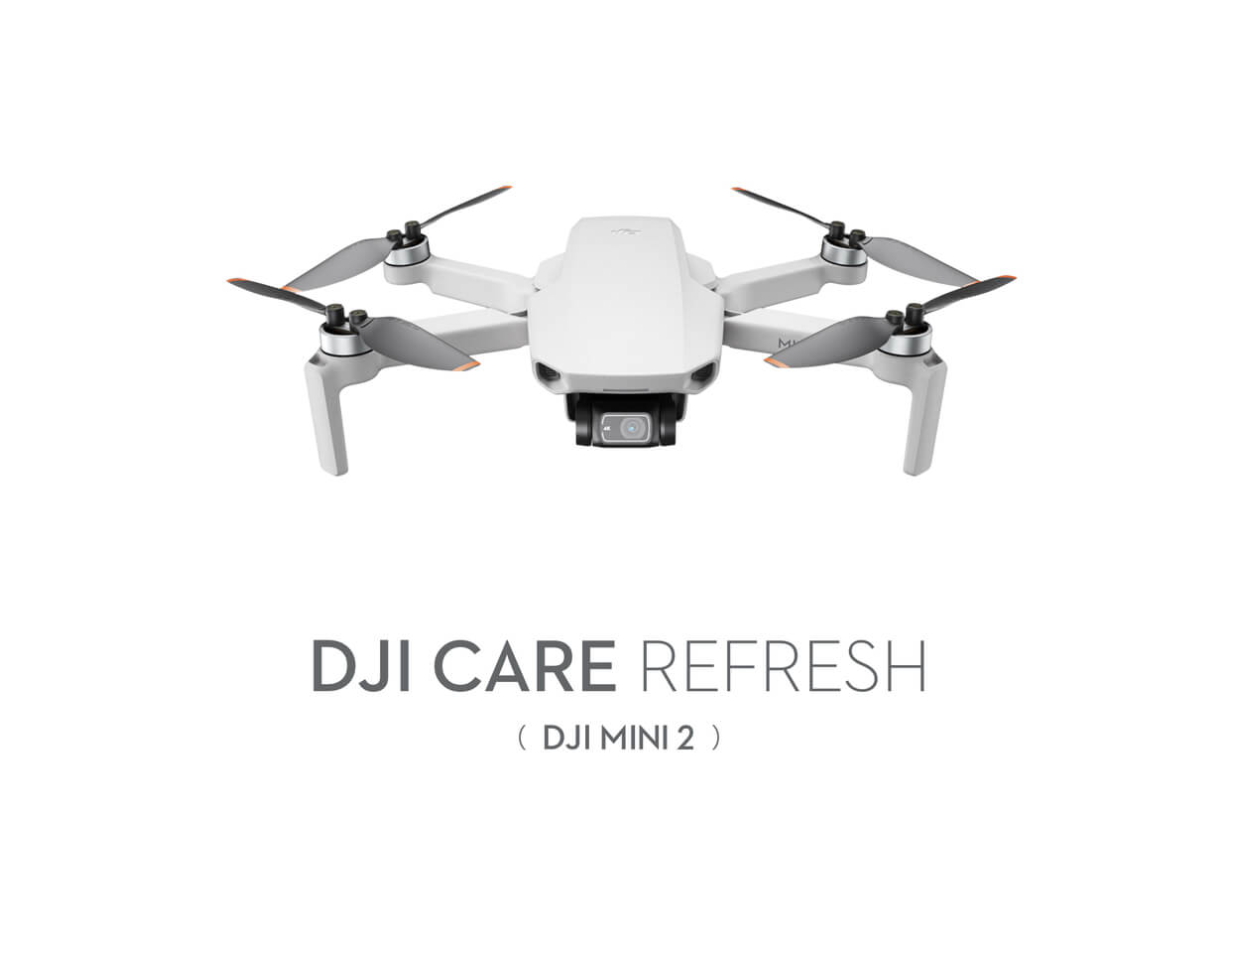 DJI Mini 2 Care Refresh - 1 Year Plan